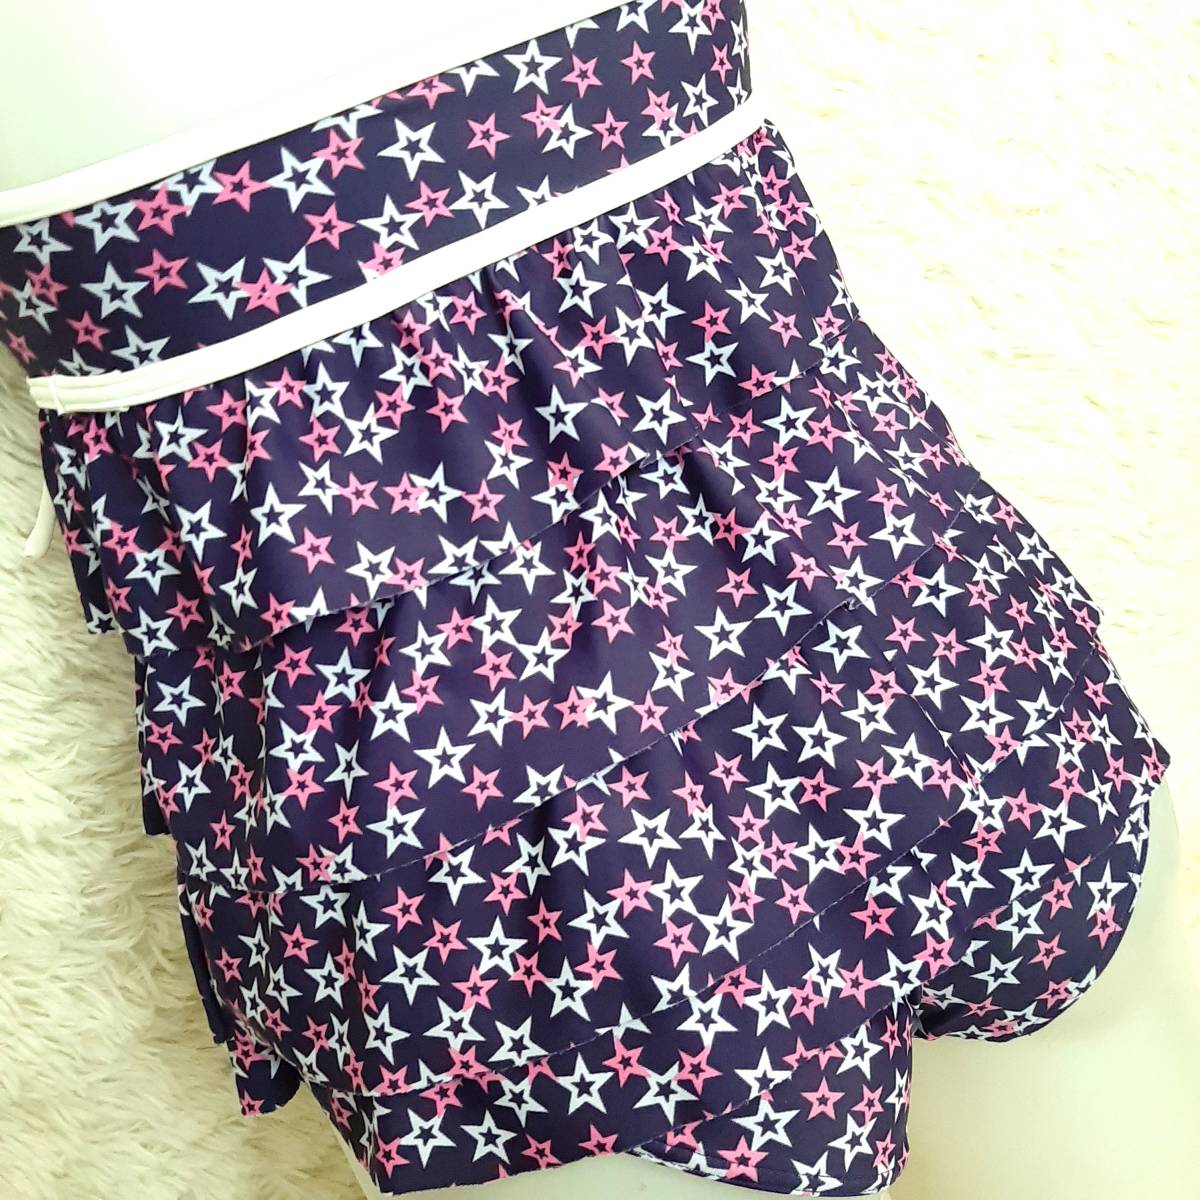  anonymity delivery * Yamato ya star pattern Star pattern ho ruta-tia-do frill tankini bikini swimsuit purple purple 7Ska